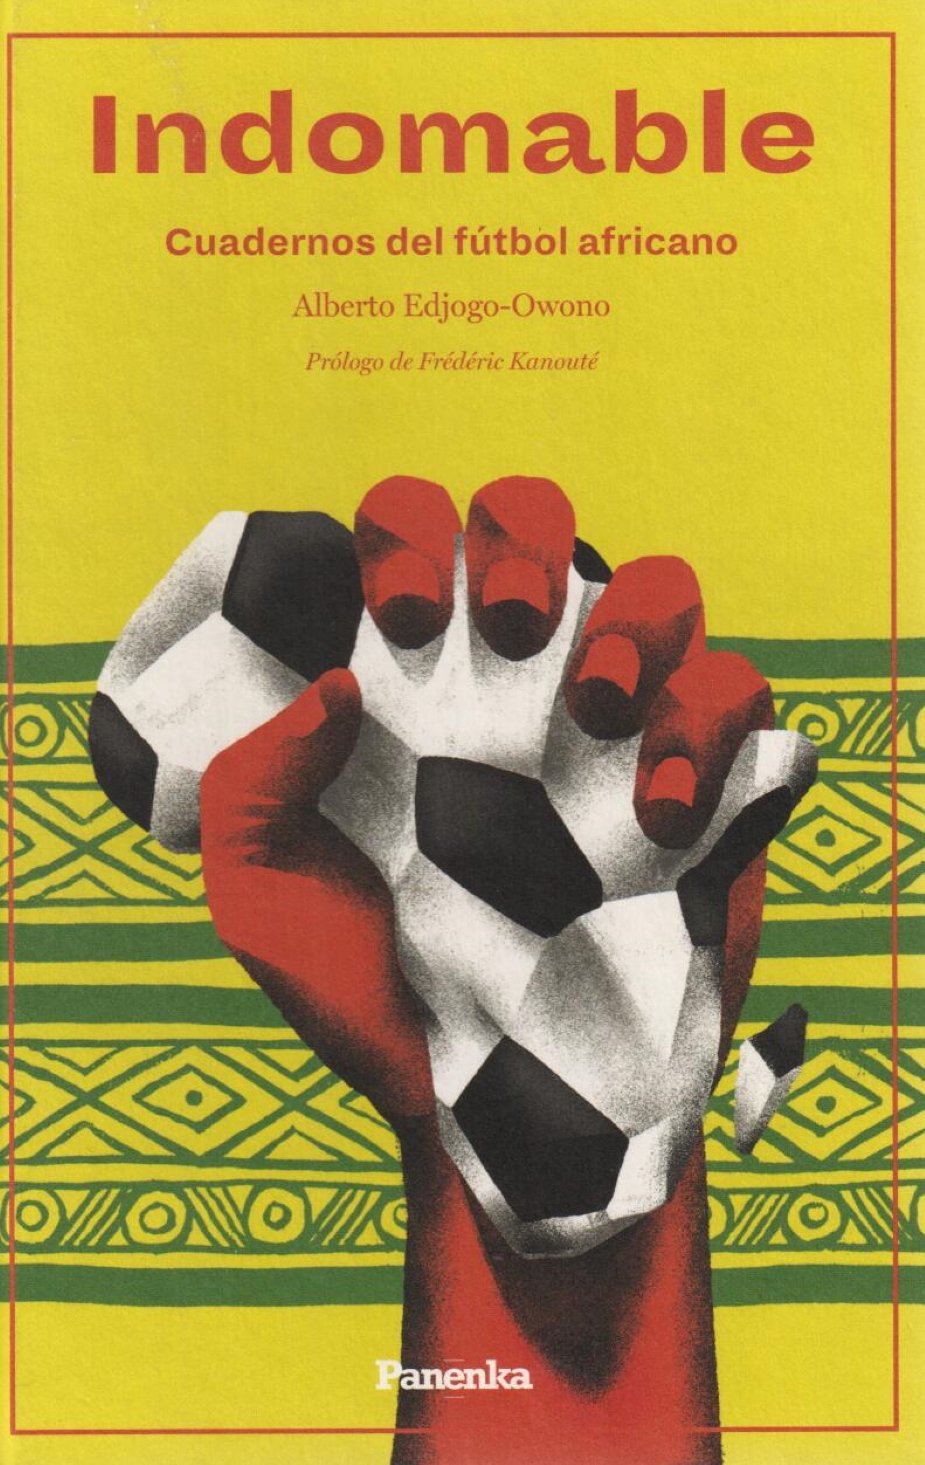 Alberto Edjogo Owono, 'Indomable. Cuadernos del fútbol africano'. Panenka, 262 p., 20,50 €.